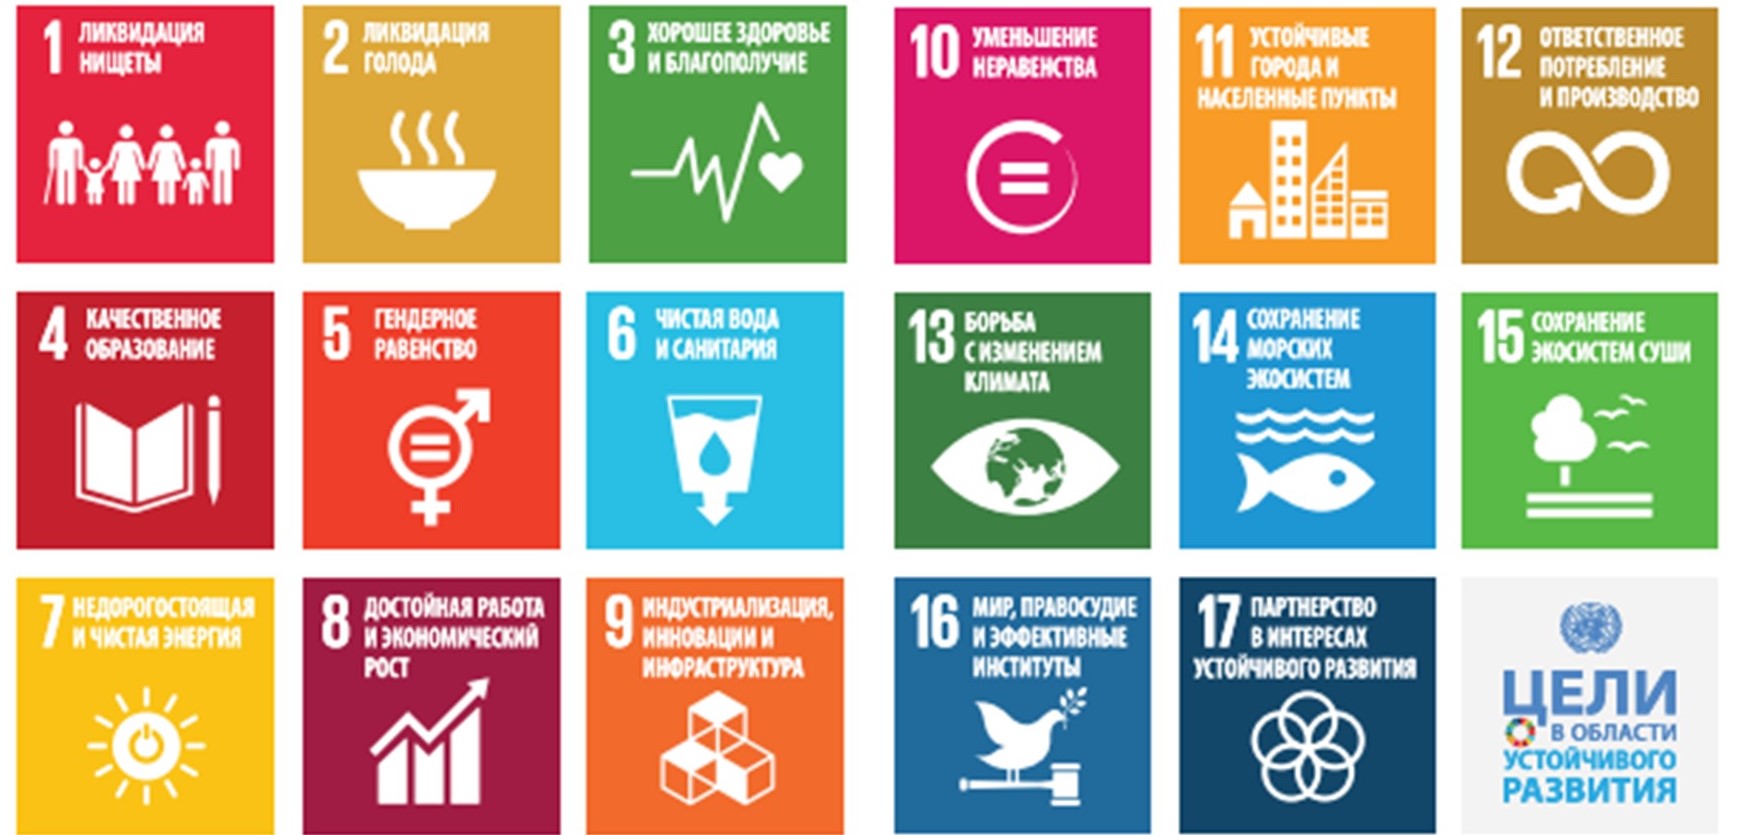 17 устойчивых целей оон. Цели в области устойчивого развития. Основная цель устойчивого развития. Цели устойчивого развития ООН. Цели концепции устойчивого развития.